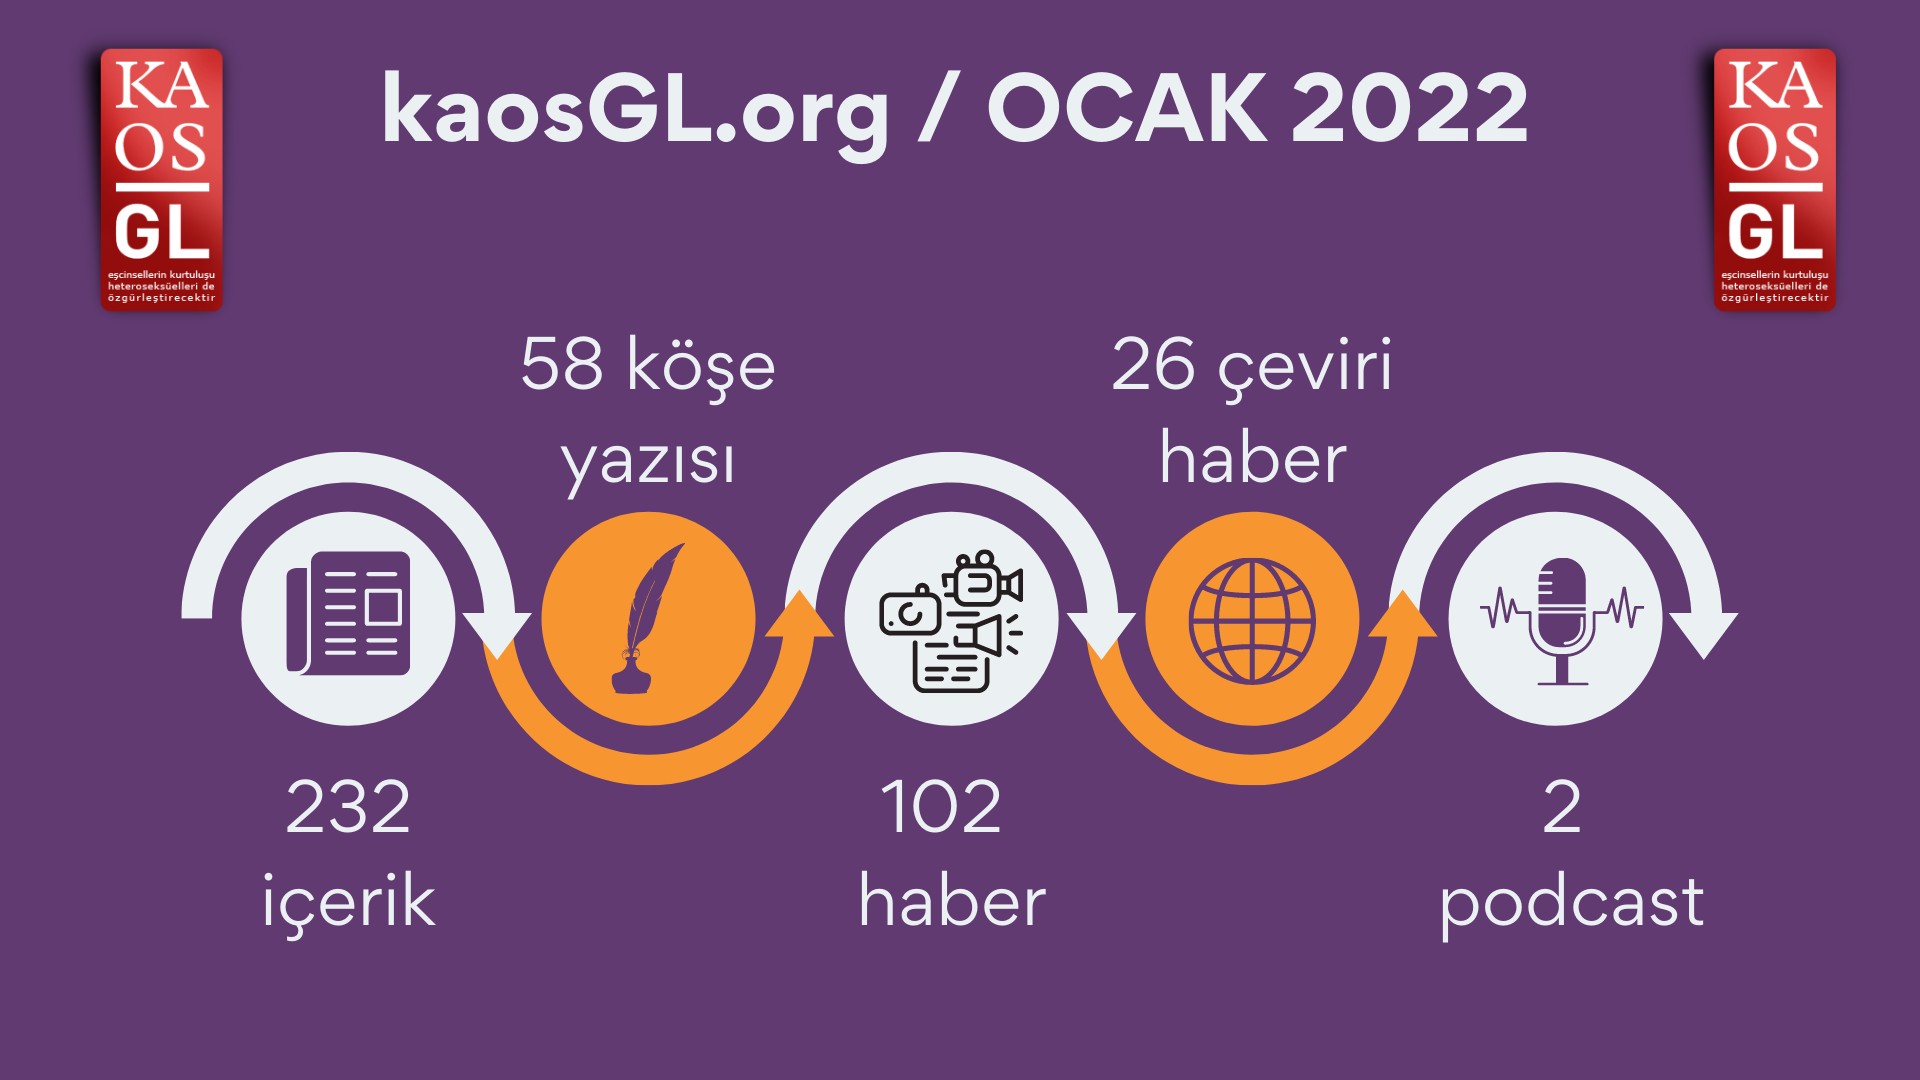 KaosGL.org, Ocak 2022’de ne yaptı? Kaos GL - LGBTİ+ Haber Portalı